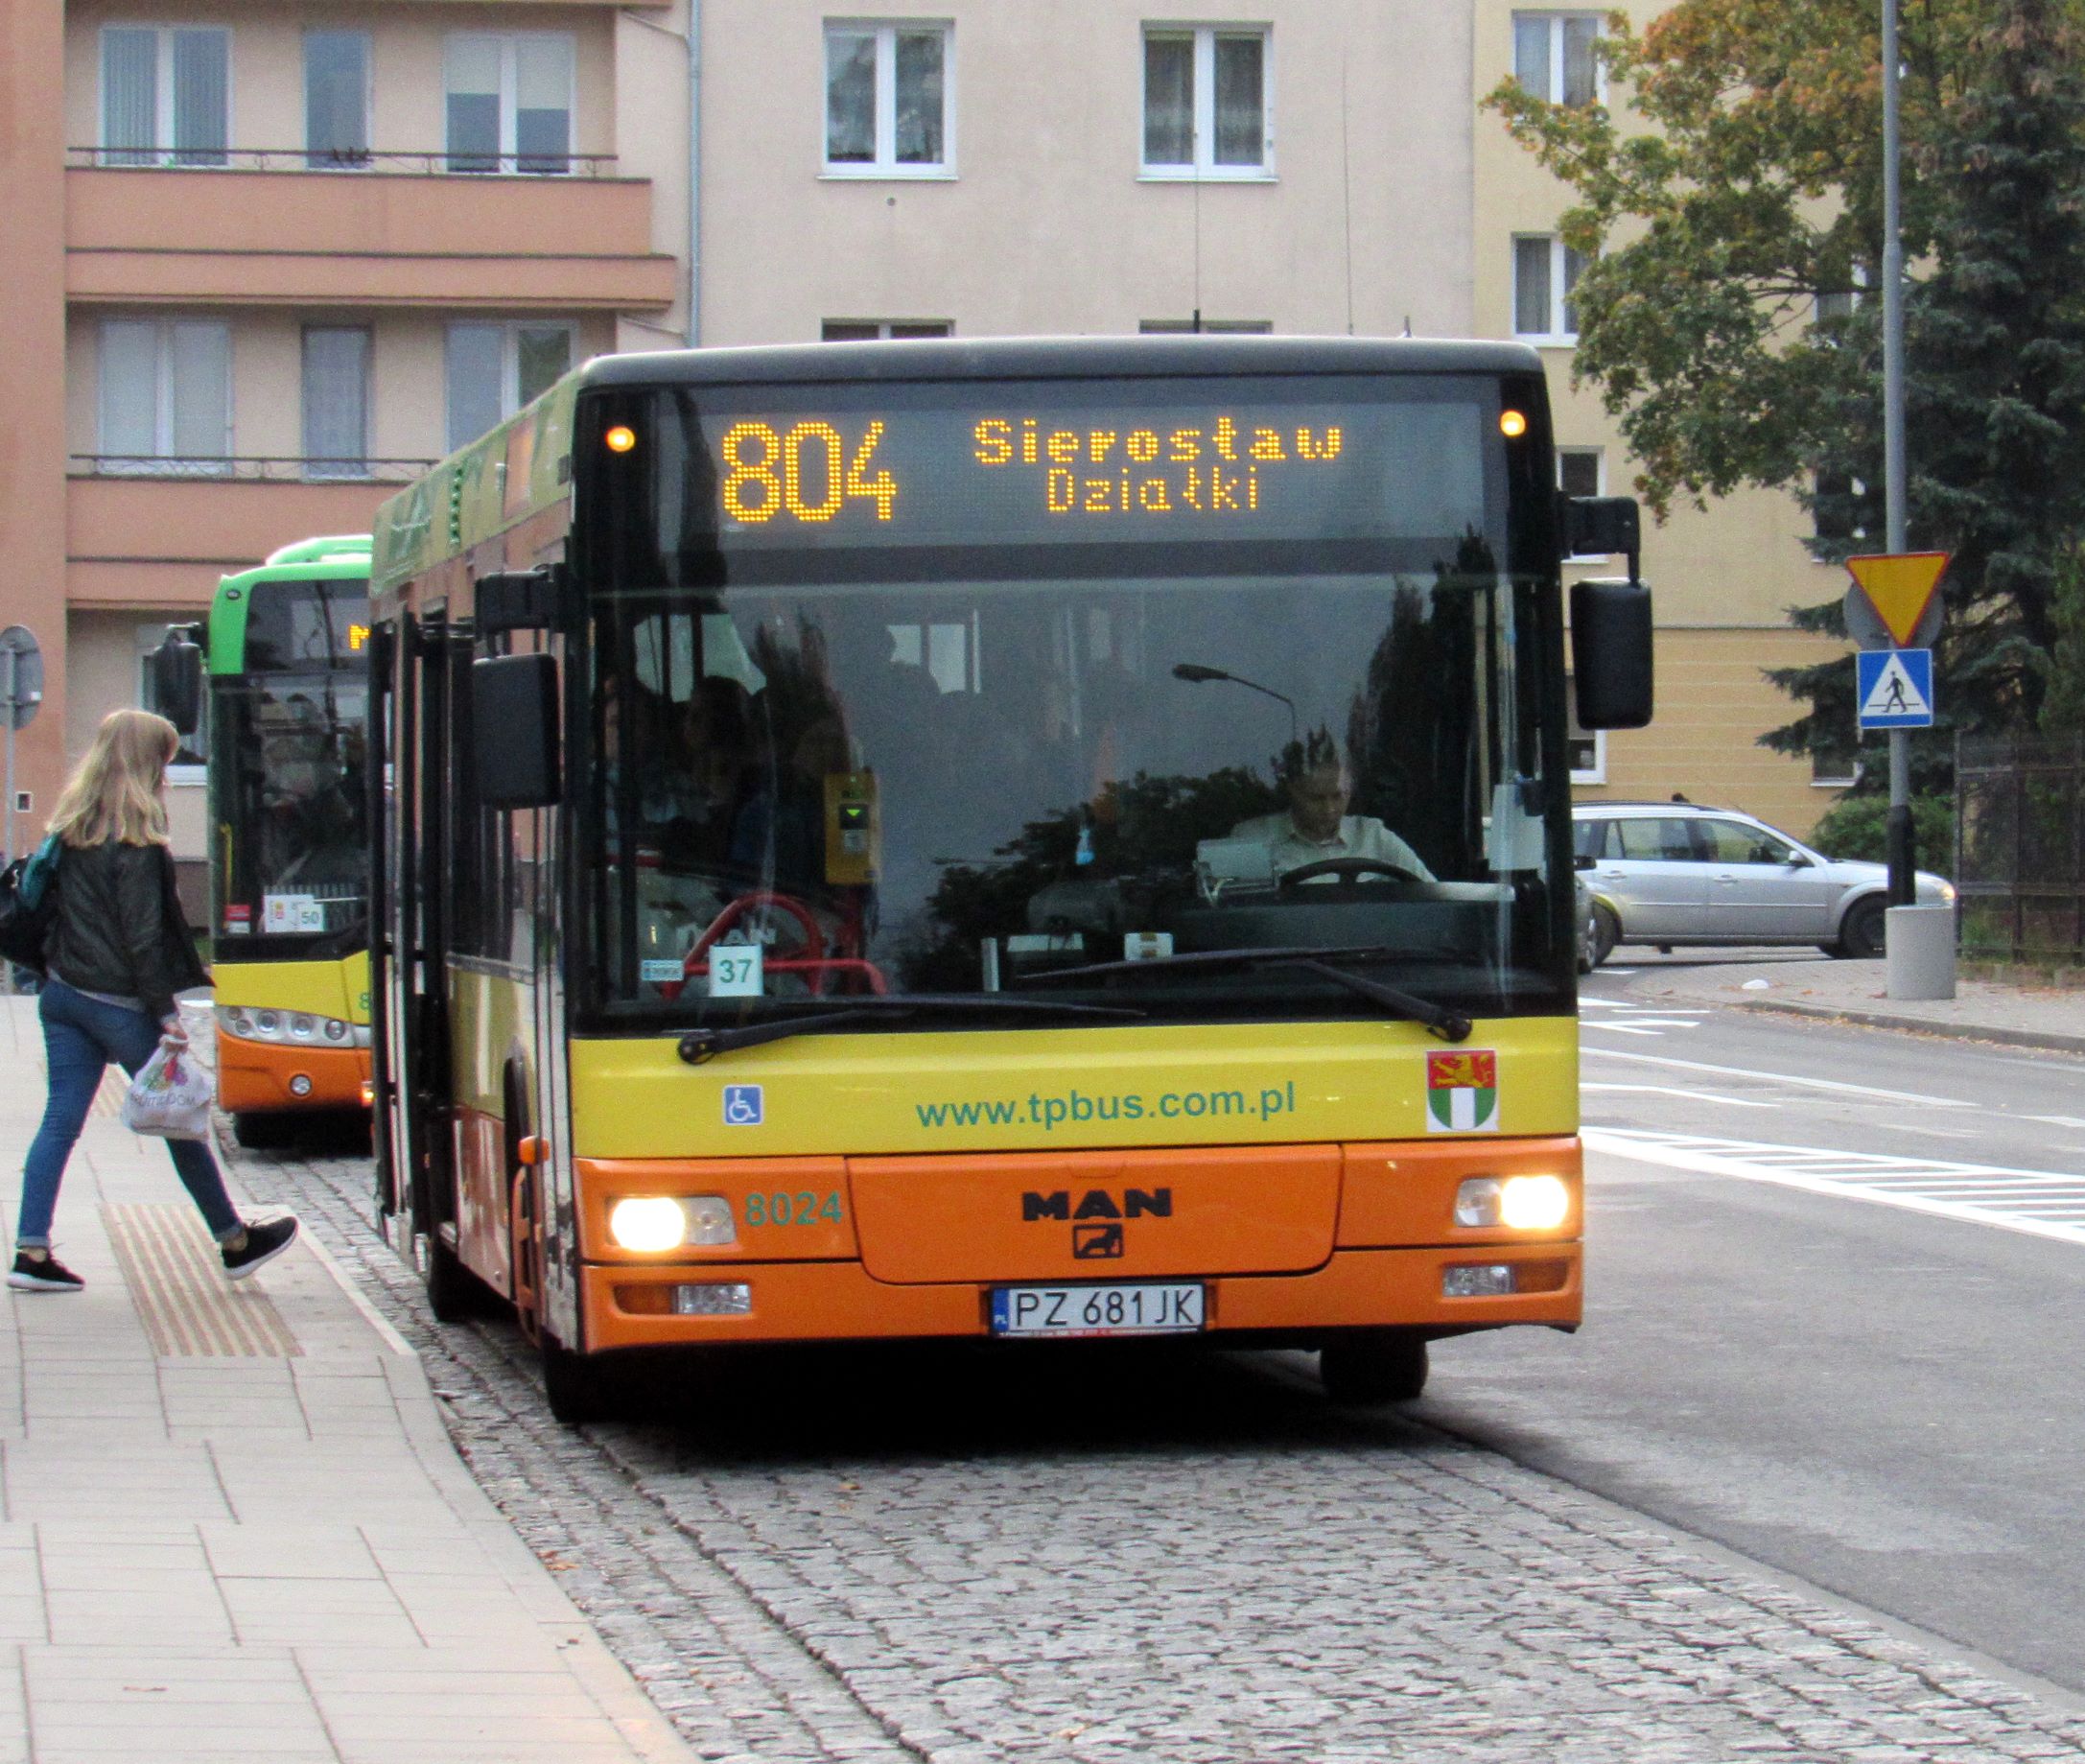 1 maja w Przeźmierowie odbędzie się bieg „Bieg Unijny” – możliwa mniejsza płynność przejazdu autobusów na liniach numer 802, 803 i 804